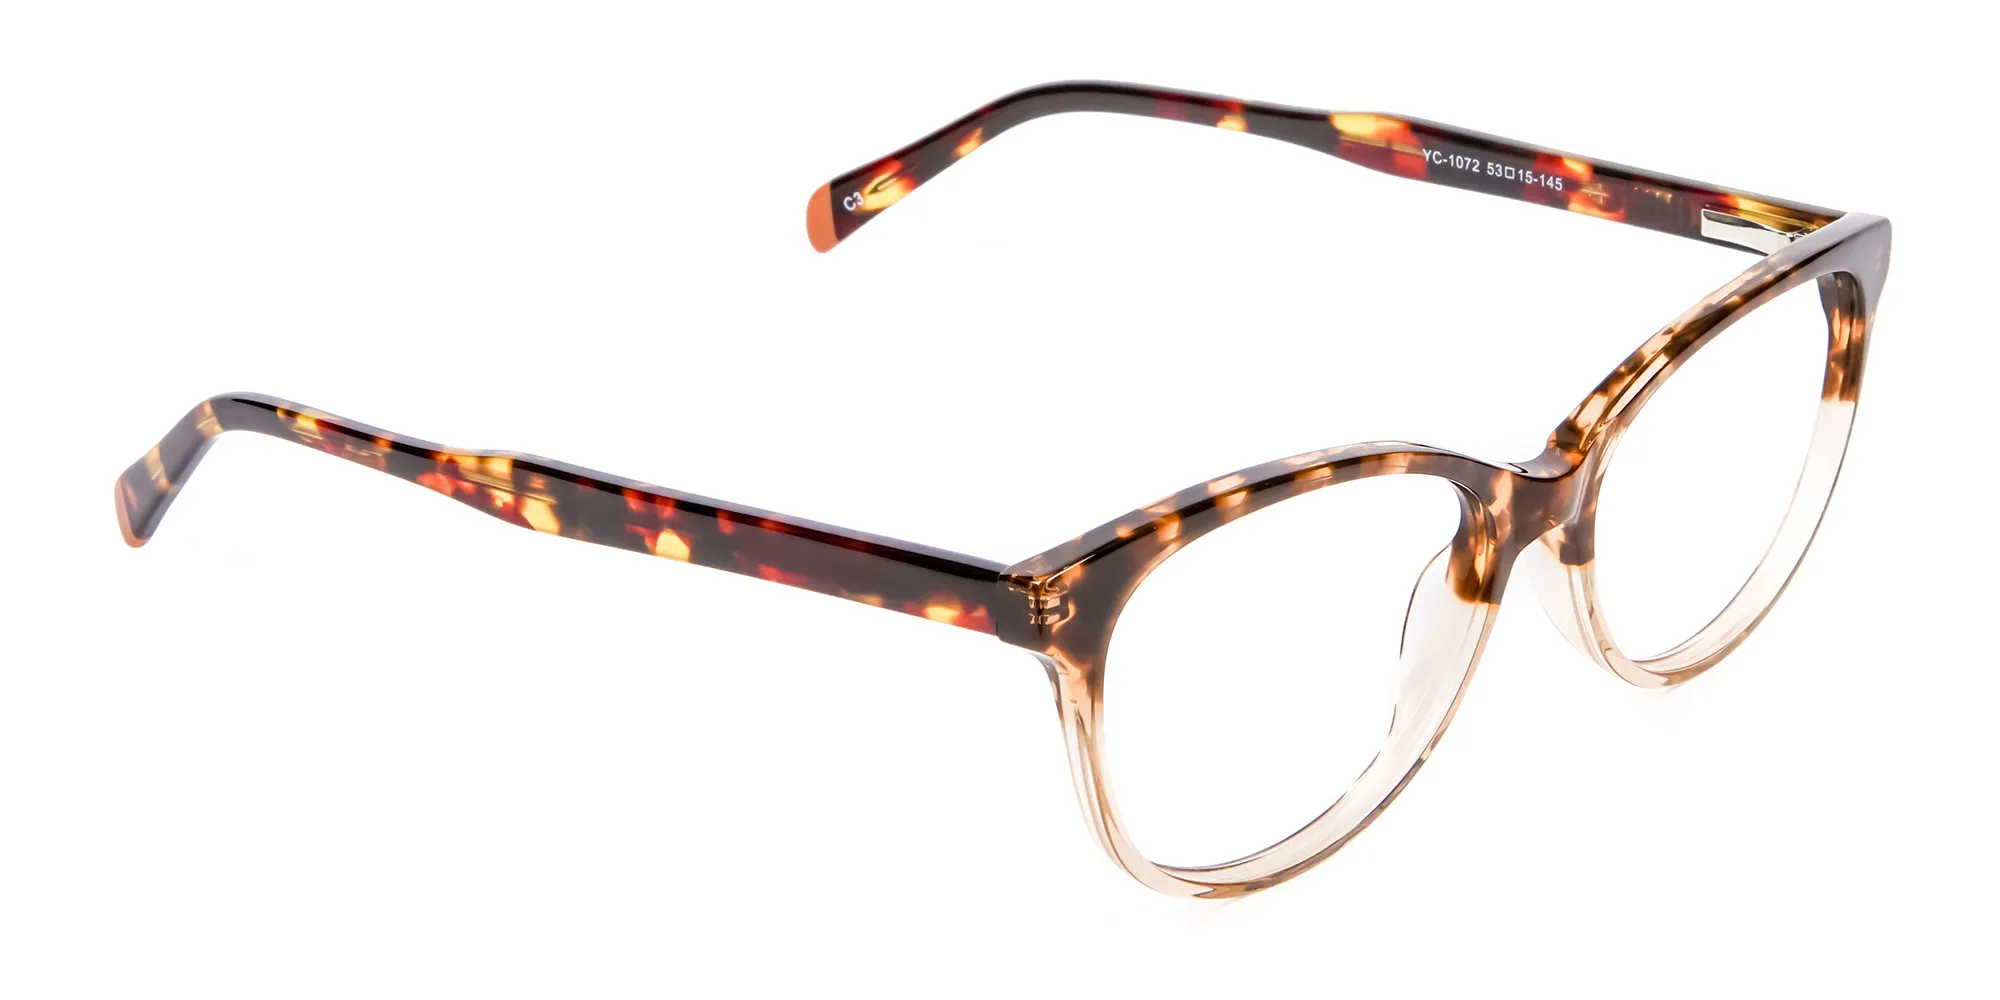 Havana & Tortoiseshell Chic Glasses - 1